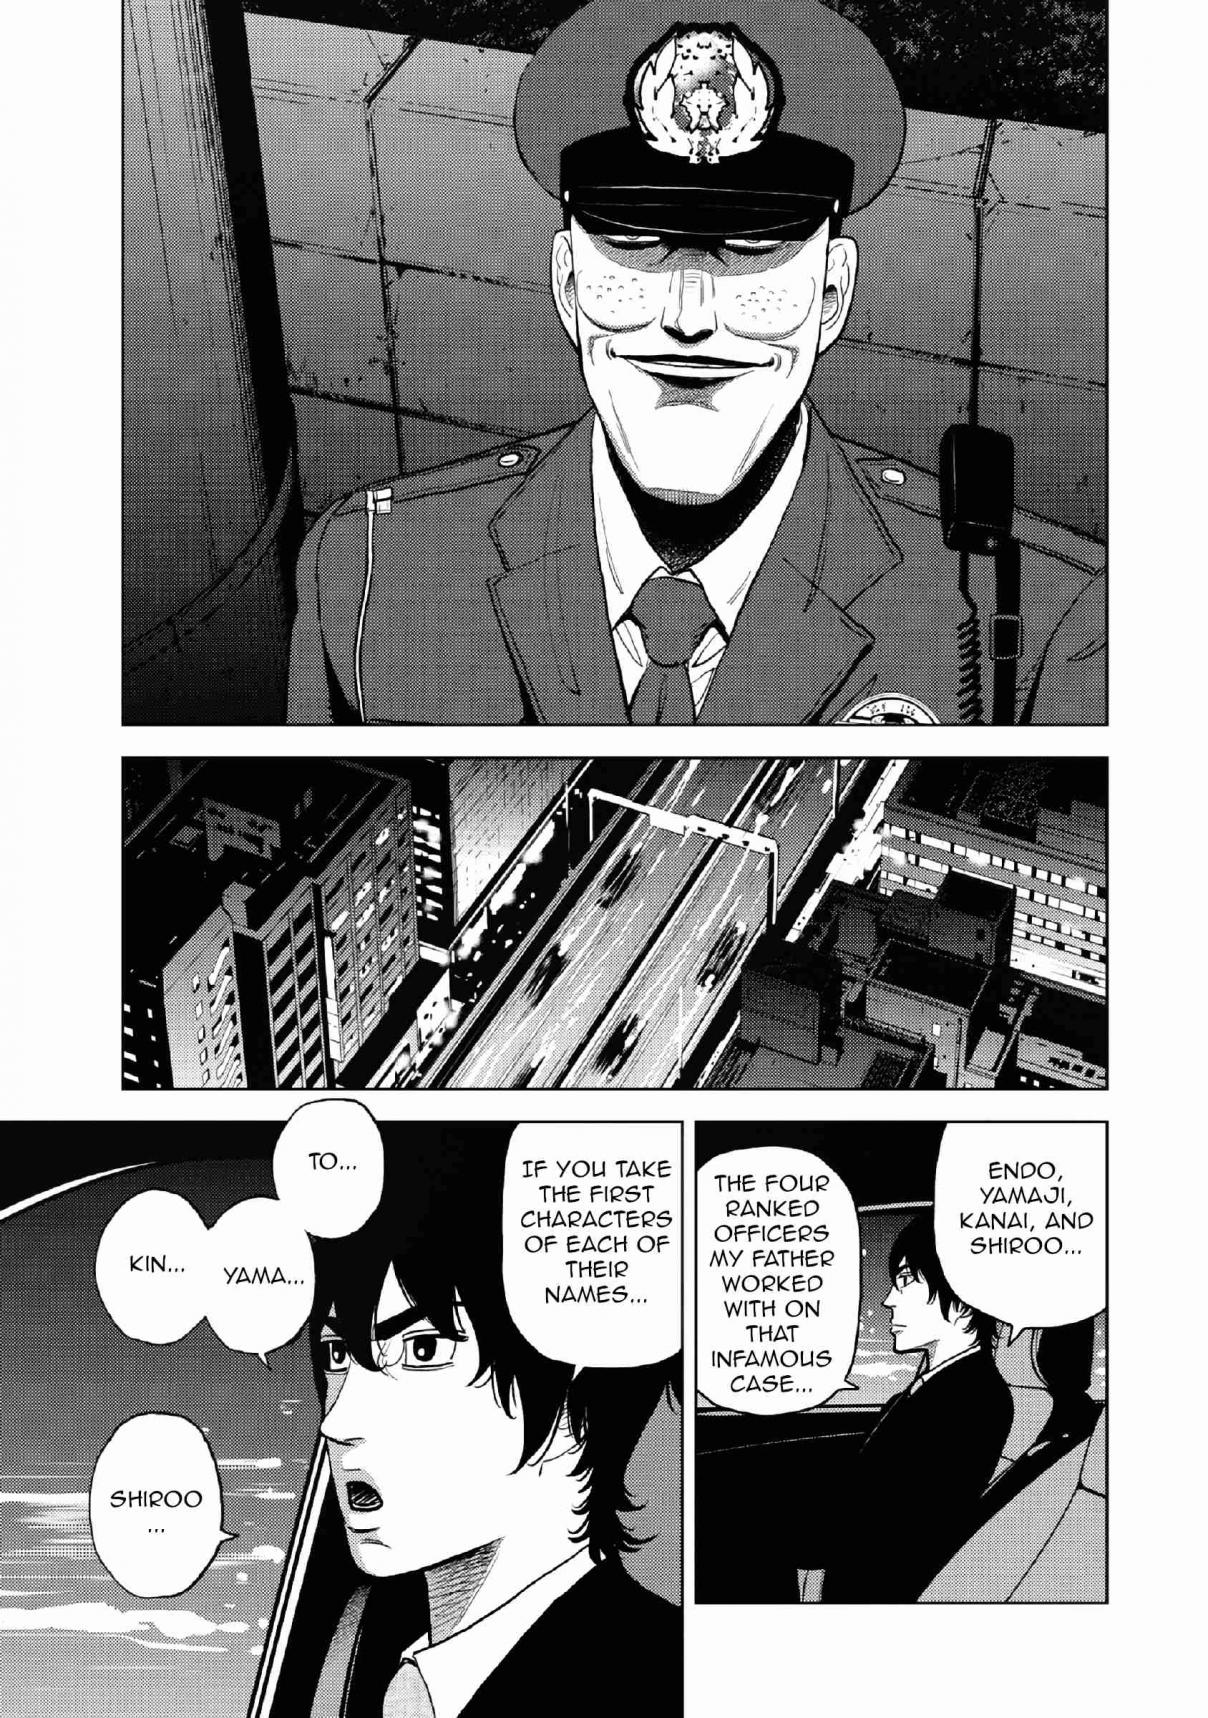 Inspector Kurokochi Vol. 2 Ch. 12 A Golden Hearted Hero